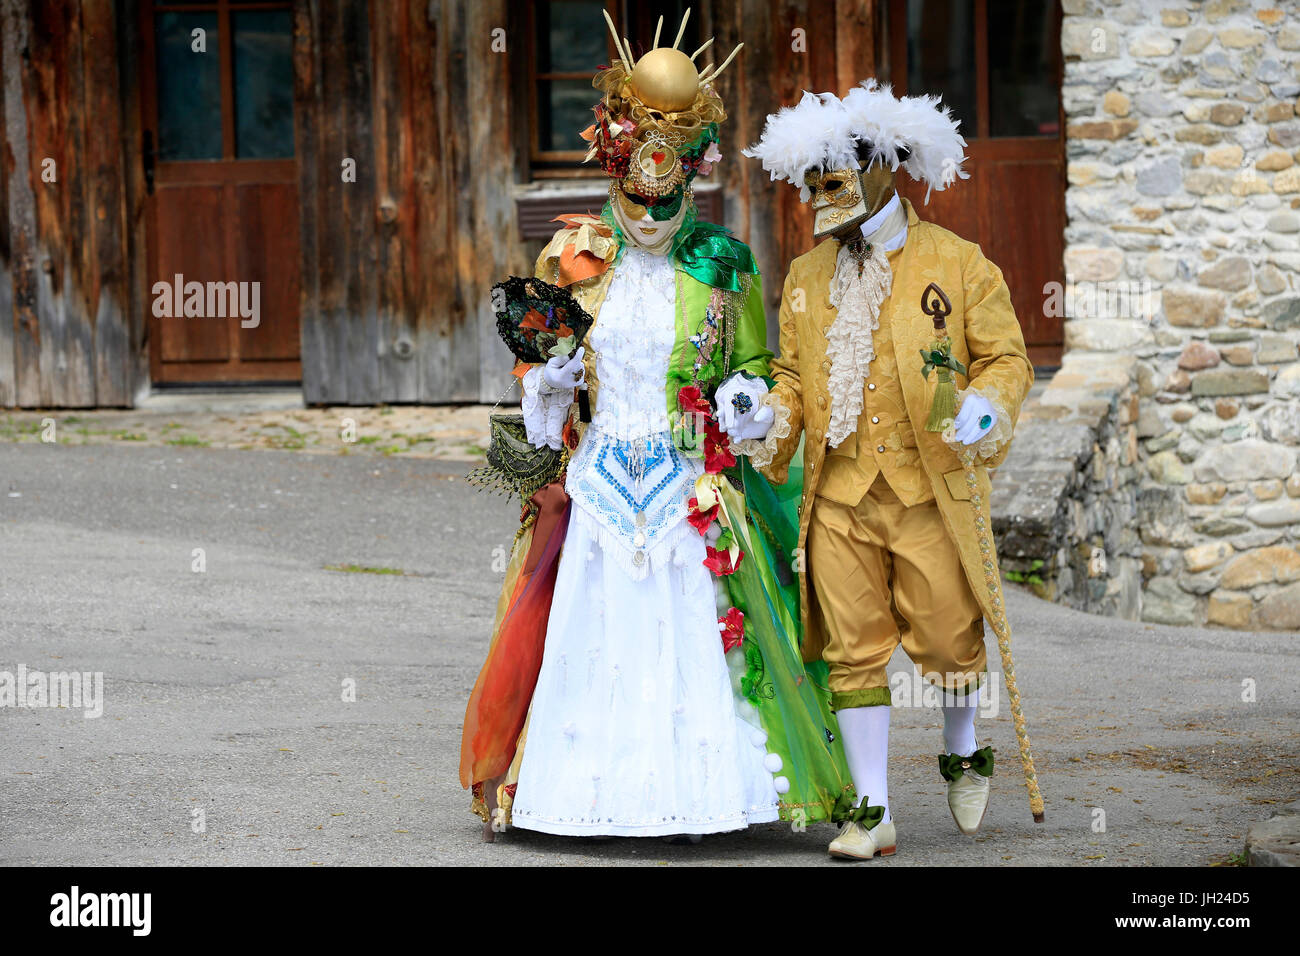 Yvoire, étiqueté Les Plus Beaux Villages de France (Les Plus Beaux Villages de France). Le carnaval vénitien. Couple portant des costumes de carnaval. Banque D'Images